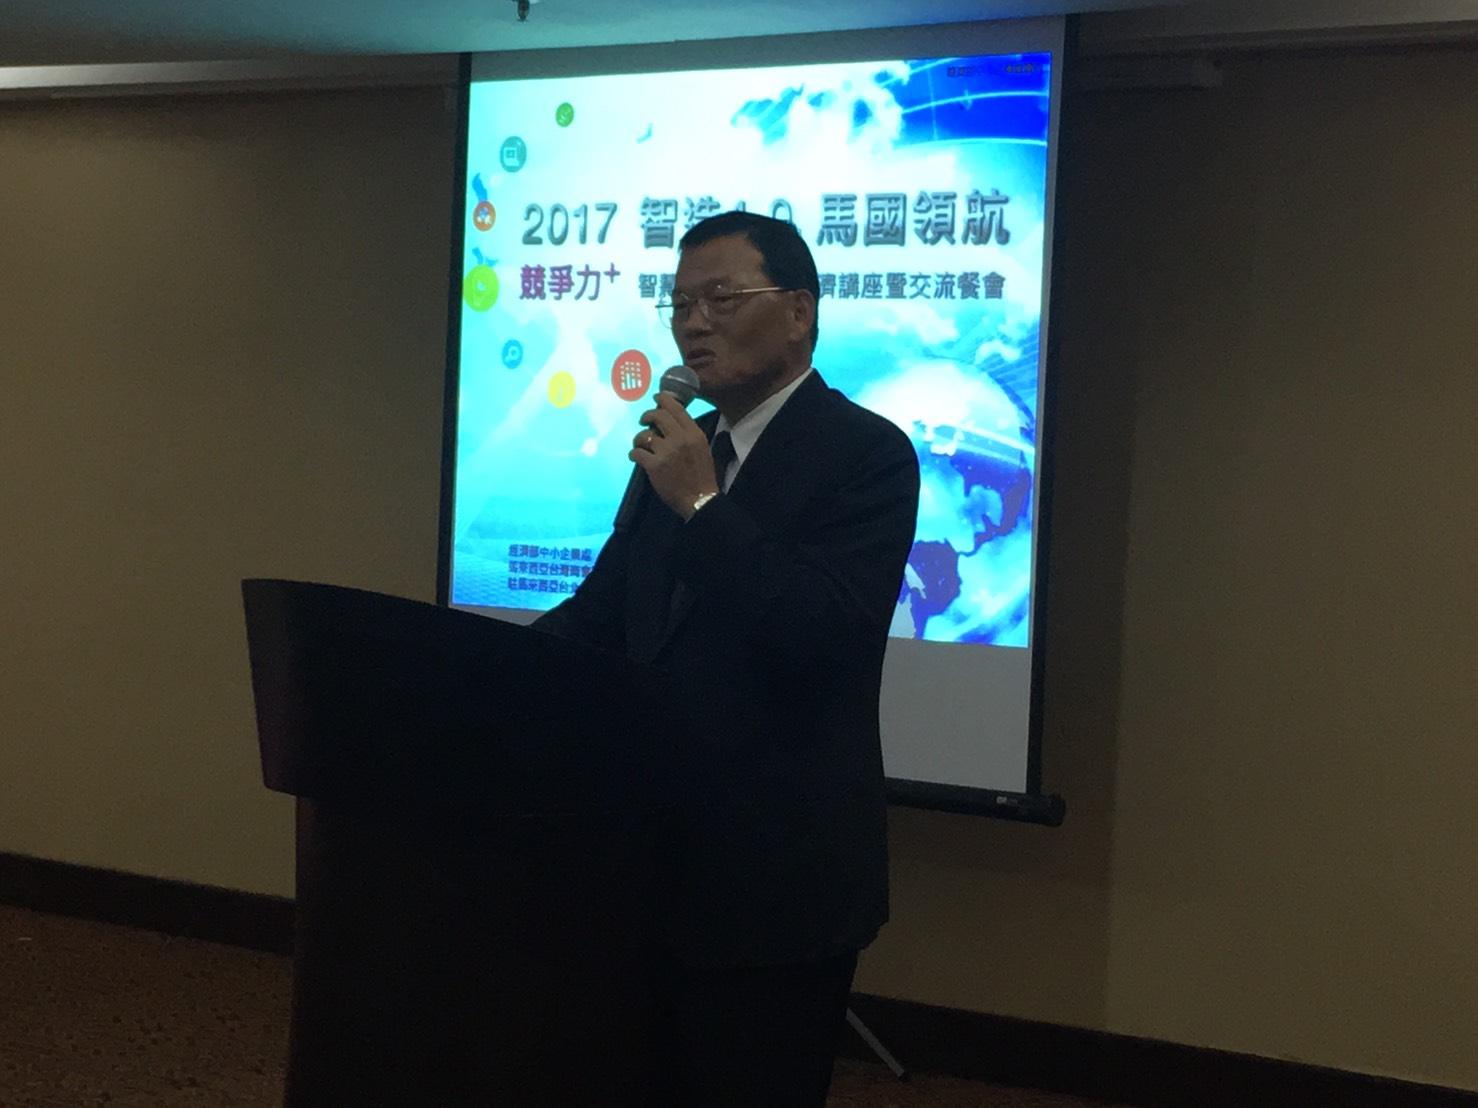  駐馬來西亞臺北經濟文化辦事處章大使計平出席「2017智造4.0馬來西亞領航—智慧製造與循環經濟講座」。
